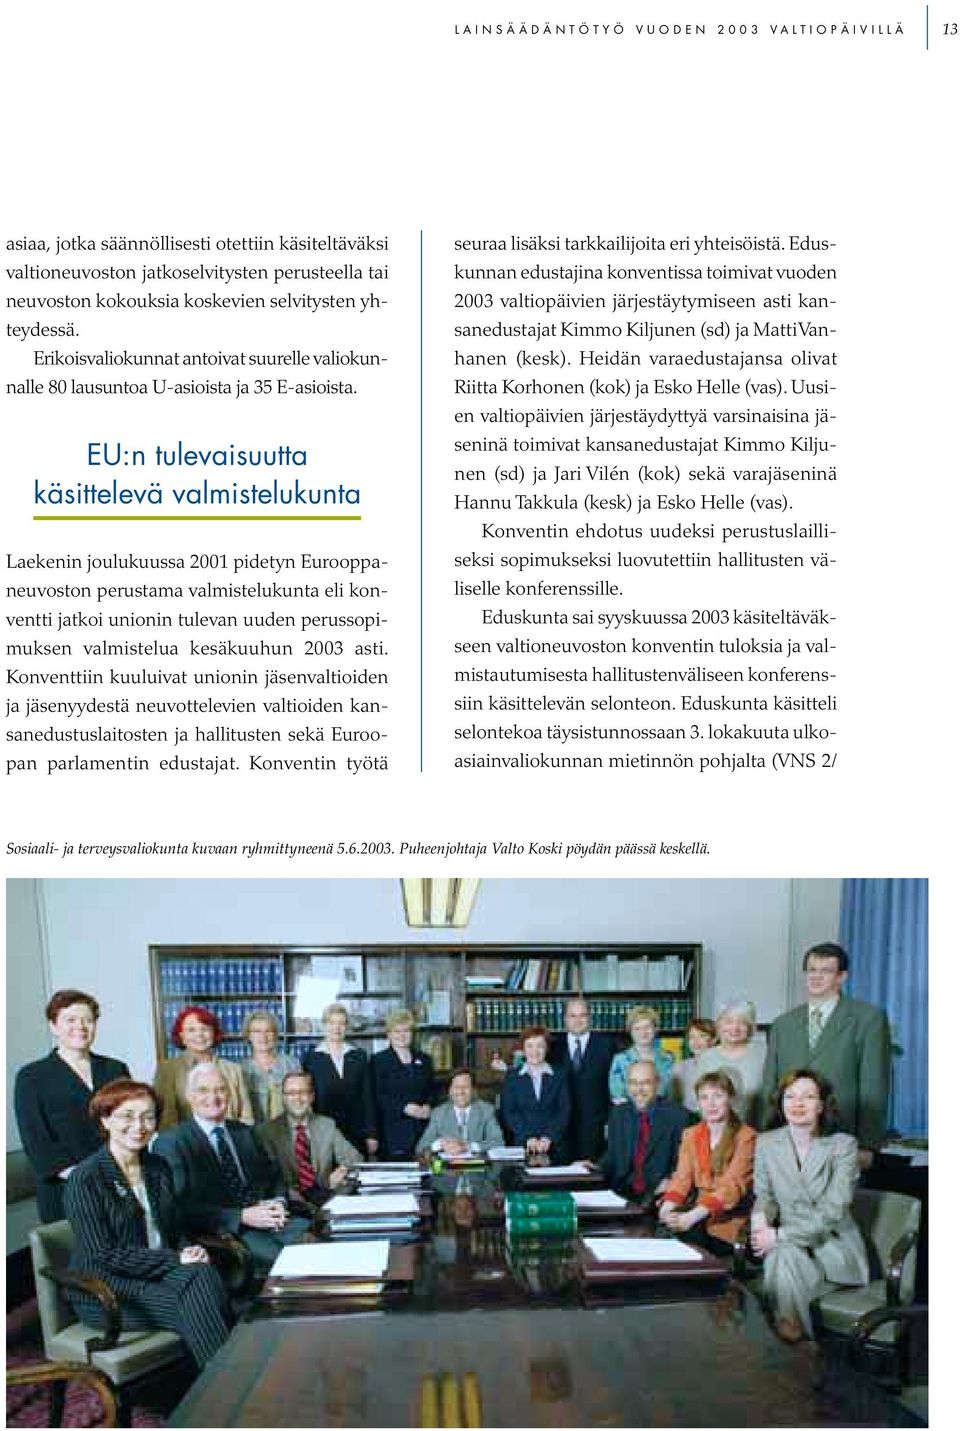 EU:n tulevaisuutta käsittelevä valmistelukunta Laekenin joulukuussa 2001 pidetyn Eurooppaneuvoston perustama valmistelukunta eli konventti jatkoi unionin tulevan uuden perussopimuksen valmistelua